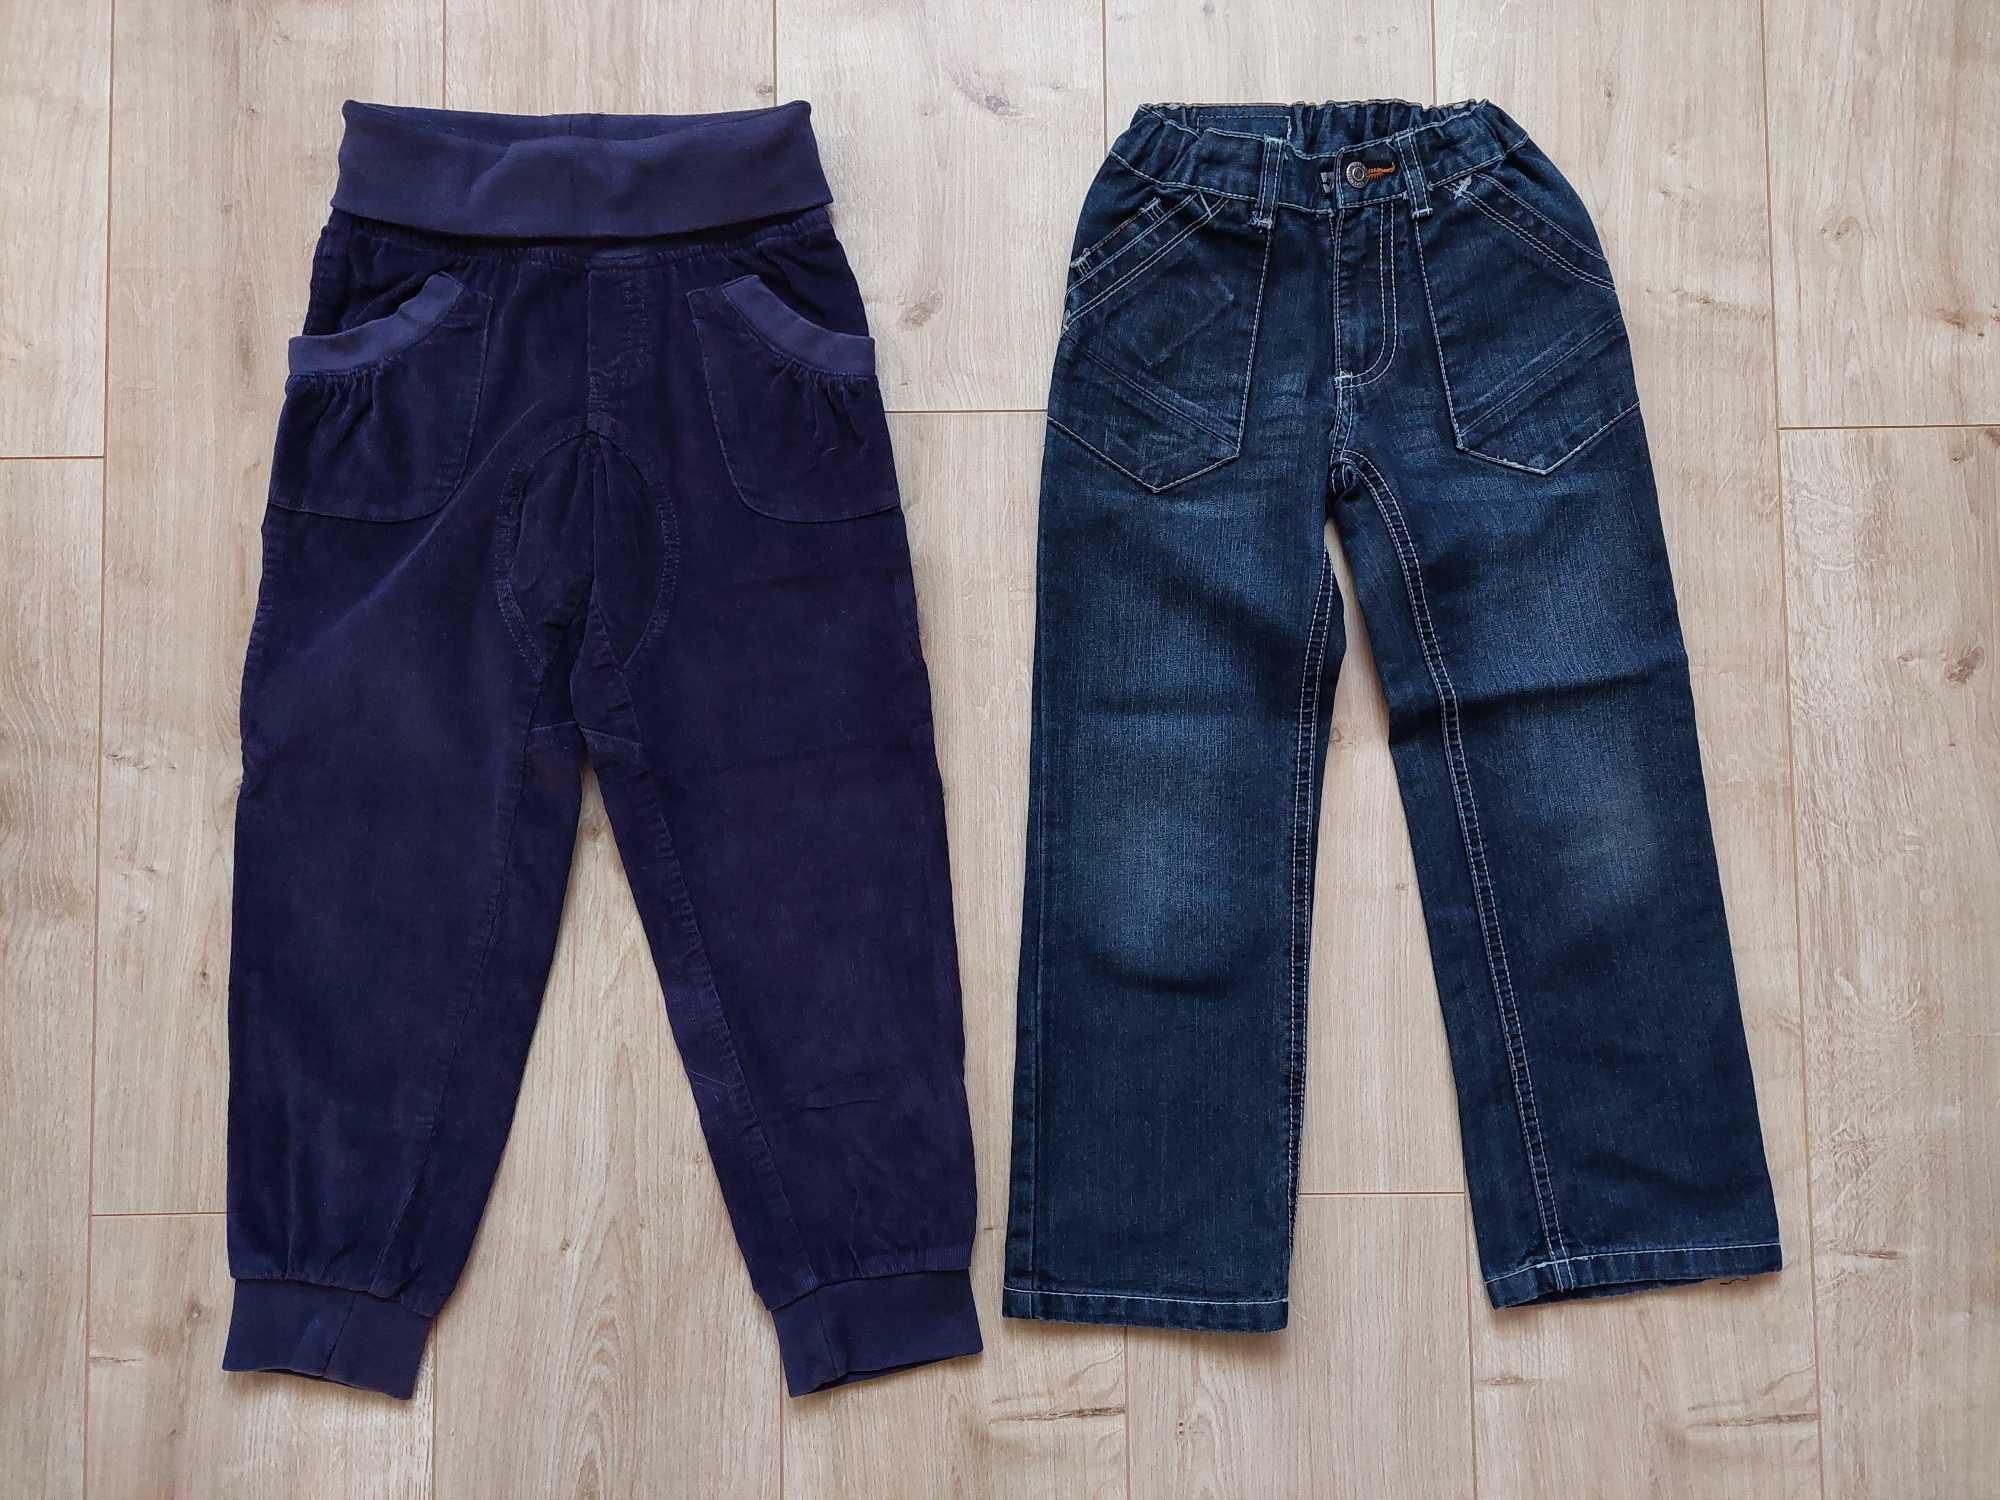 Spodnie chłopięce jeansowe,sztruksowe,116,Lupilu,extenso,bdb